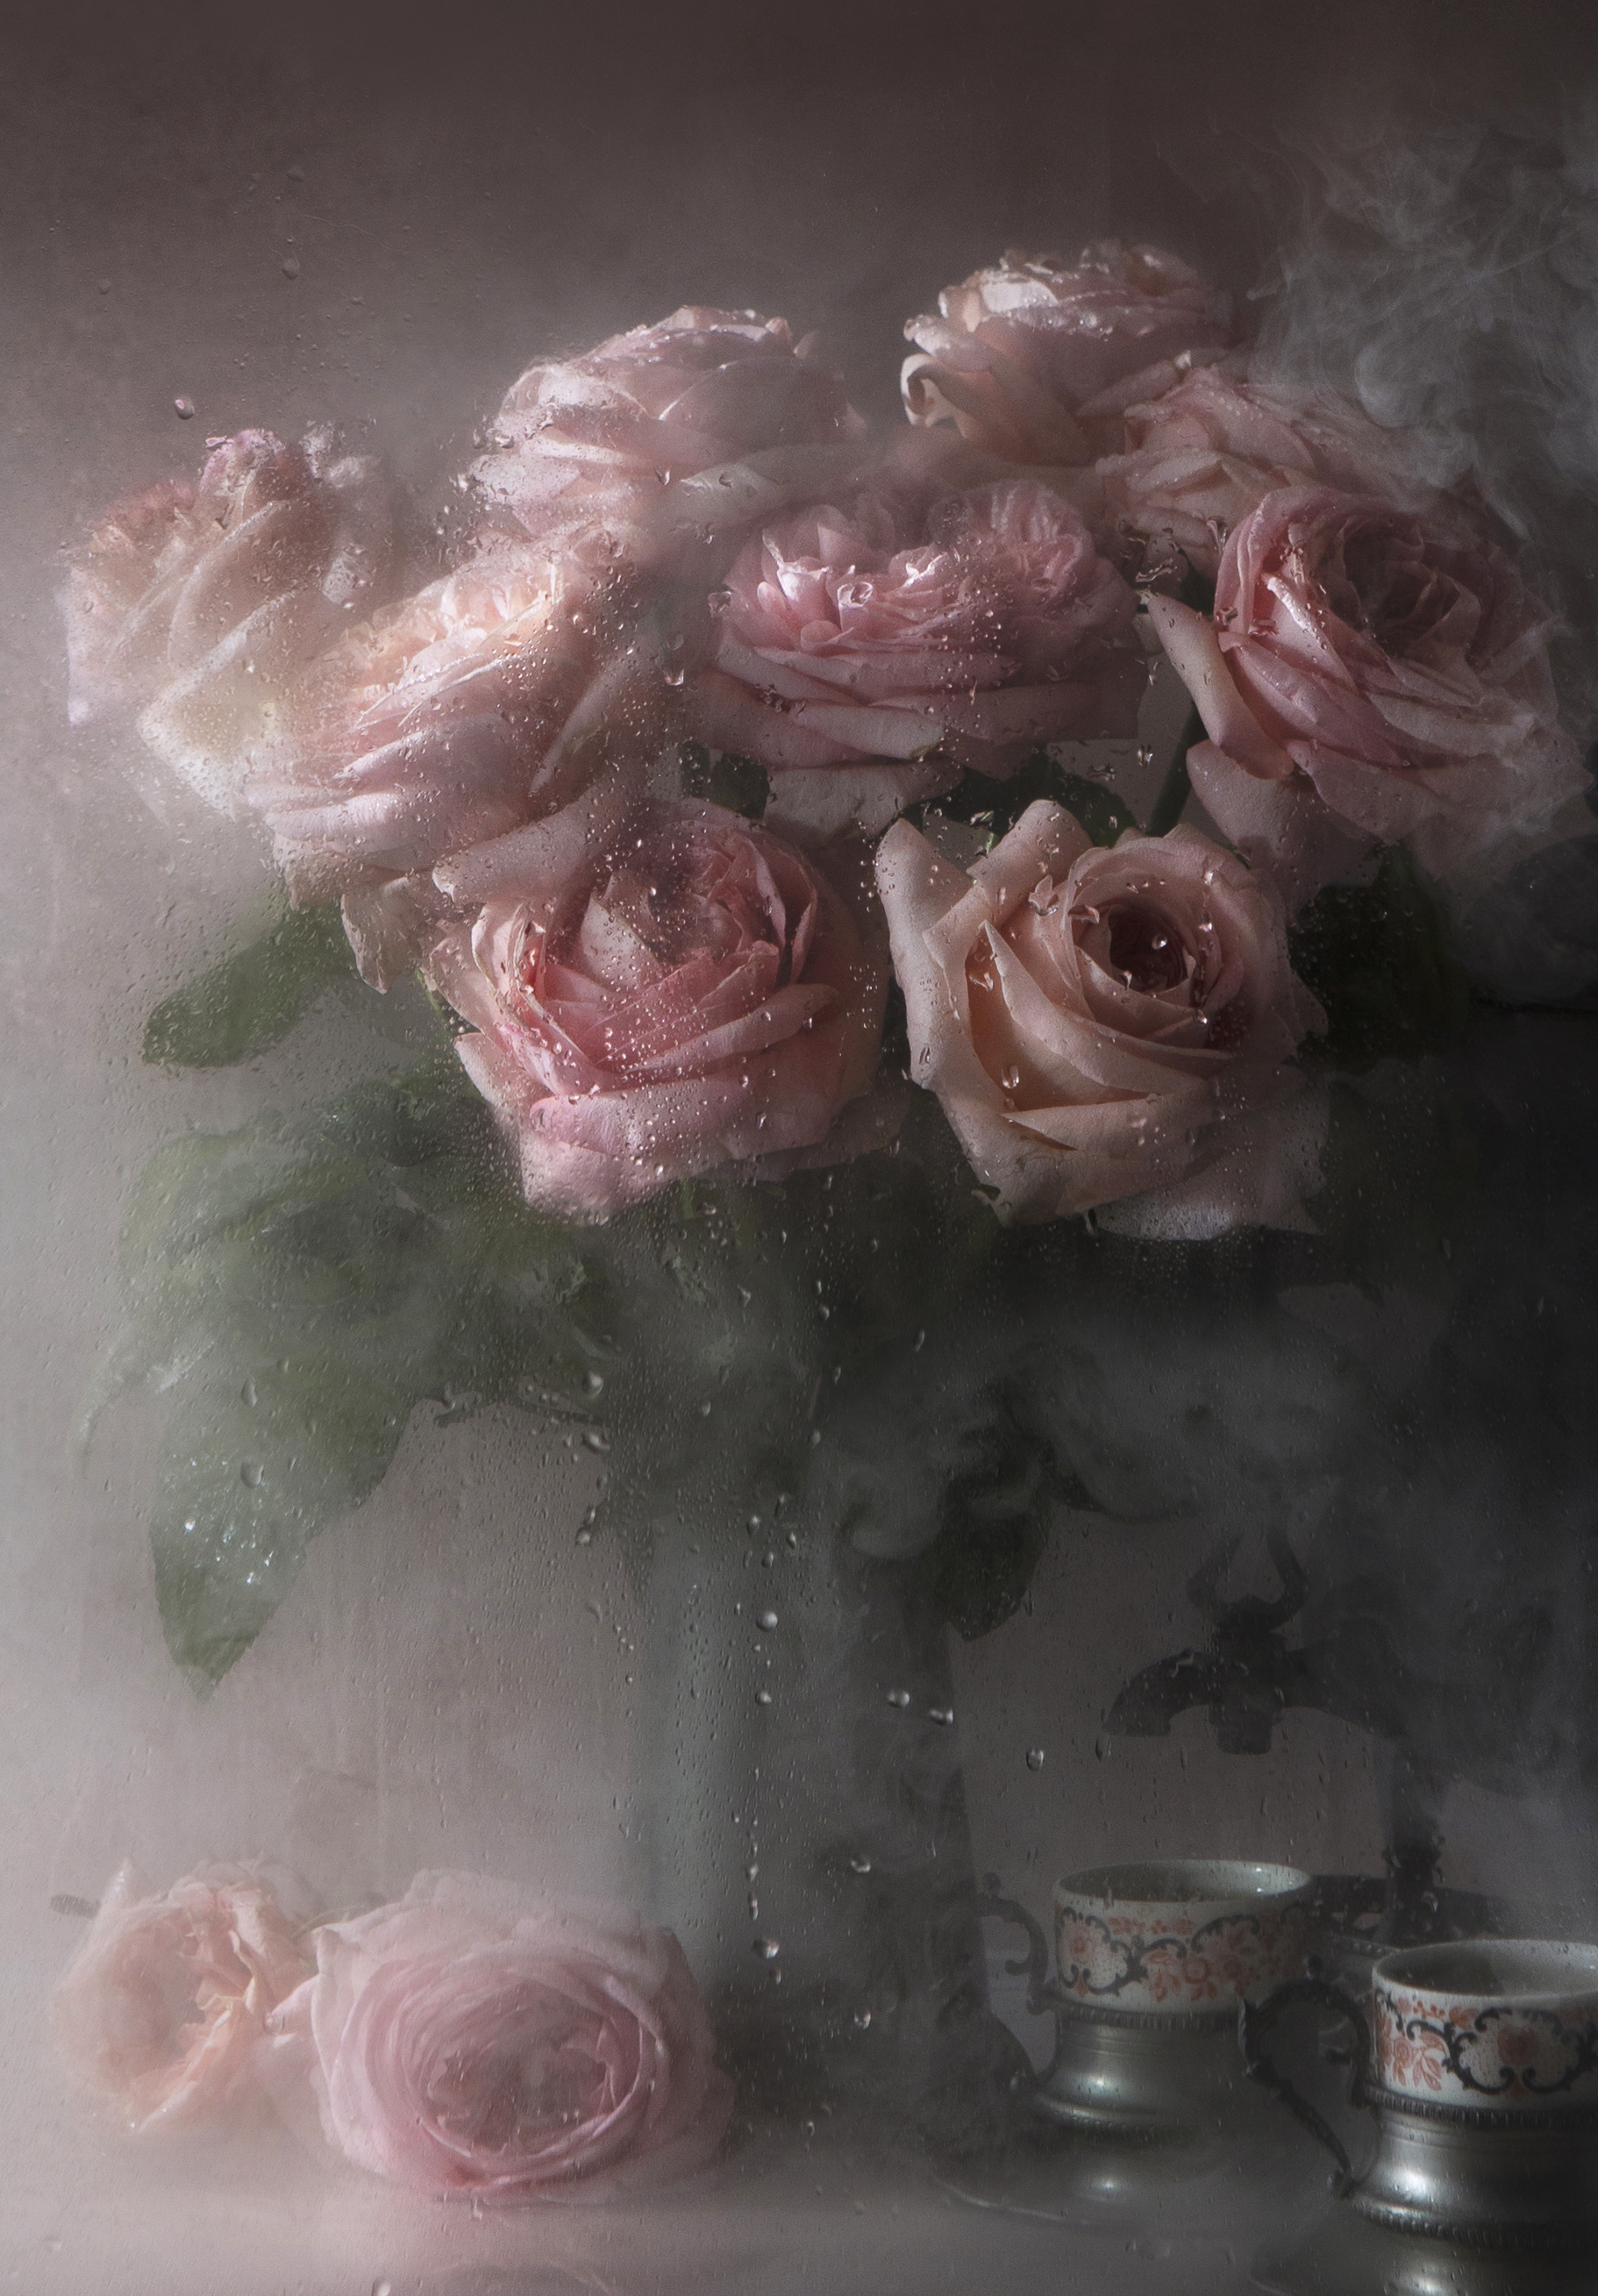 розы, туман, стекло, кофе, завтрак, кофейник, посуда, винтаж, думка, натюрморт, воспоминания, настроение, розовый, брызги,осень,весна, Kostomarova Alla